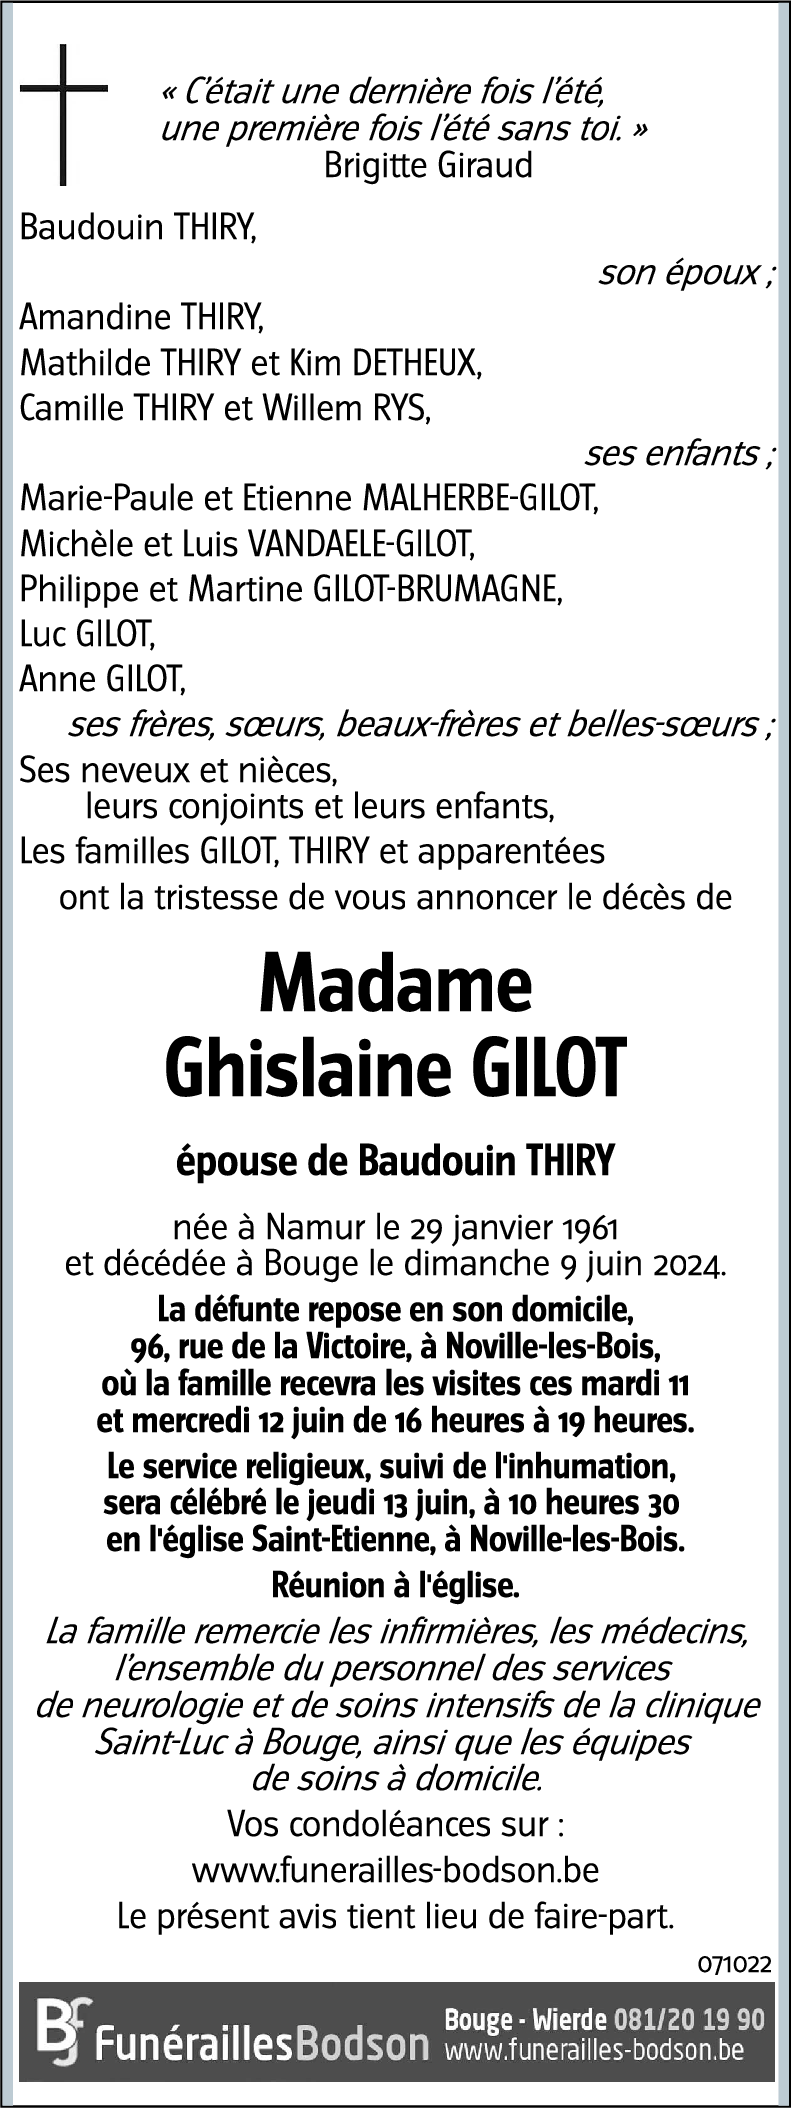 Ghislaine GILOT